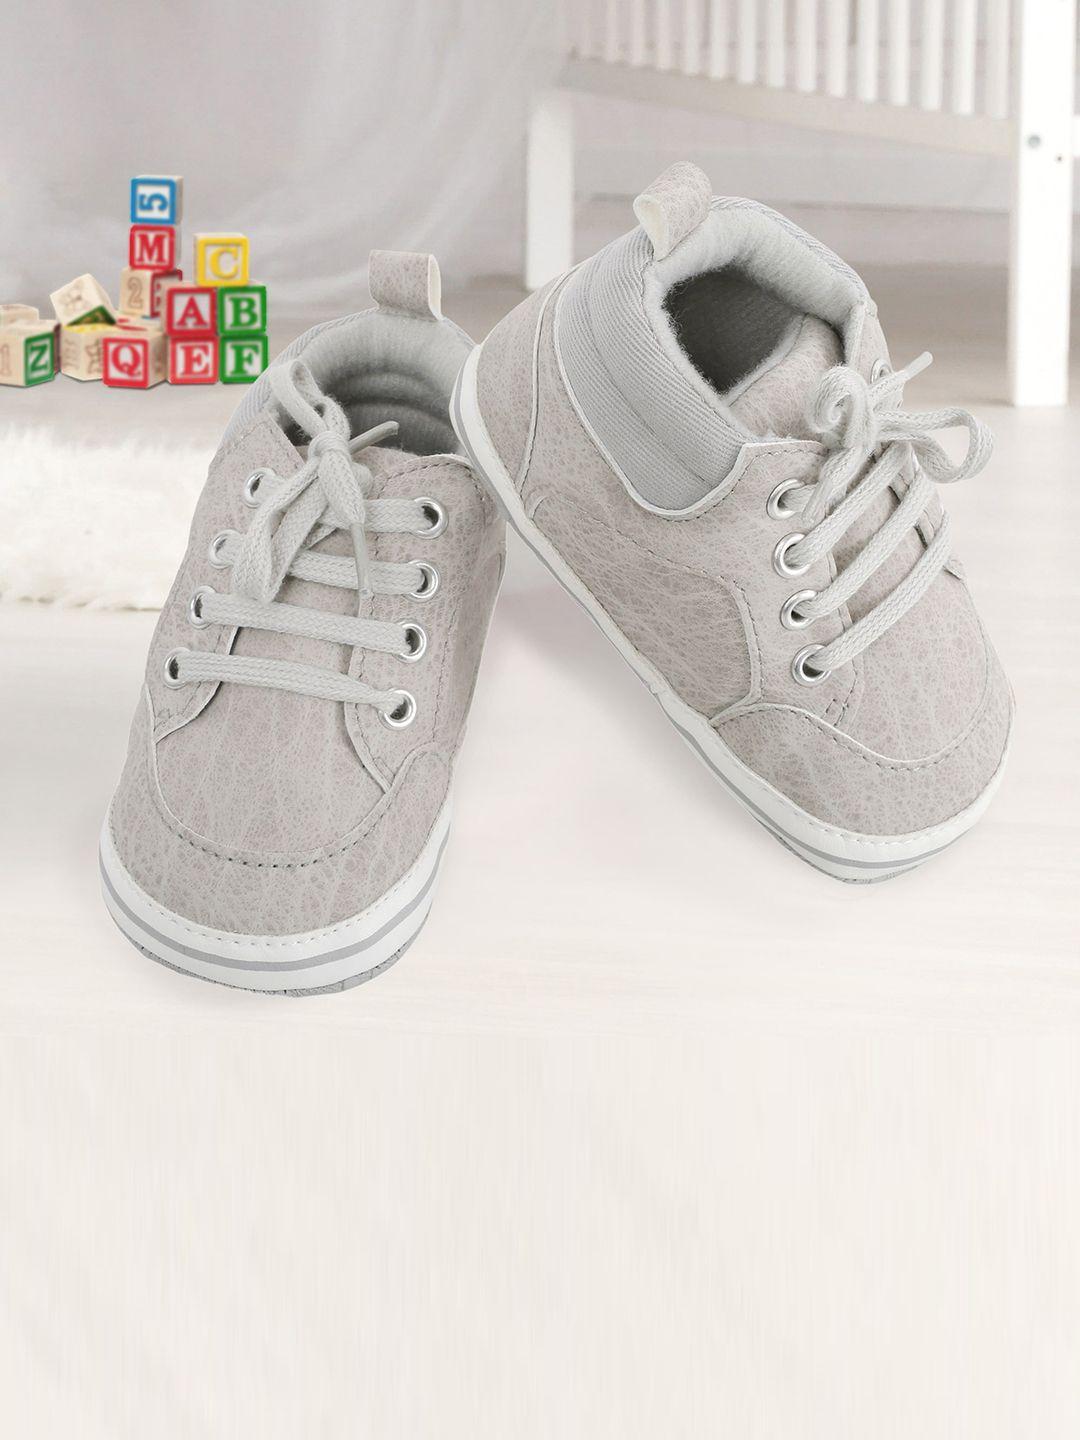 baby moo kids grey sneakers